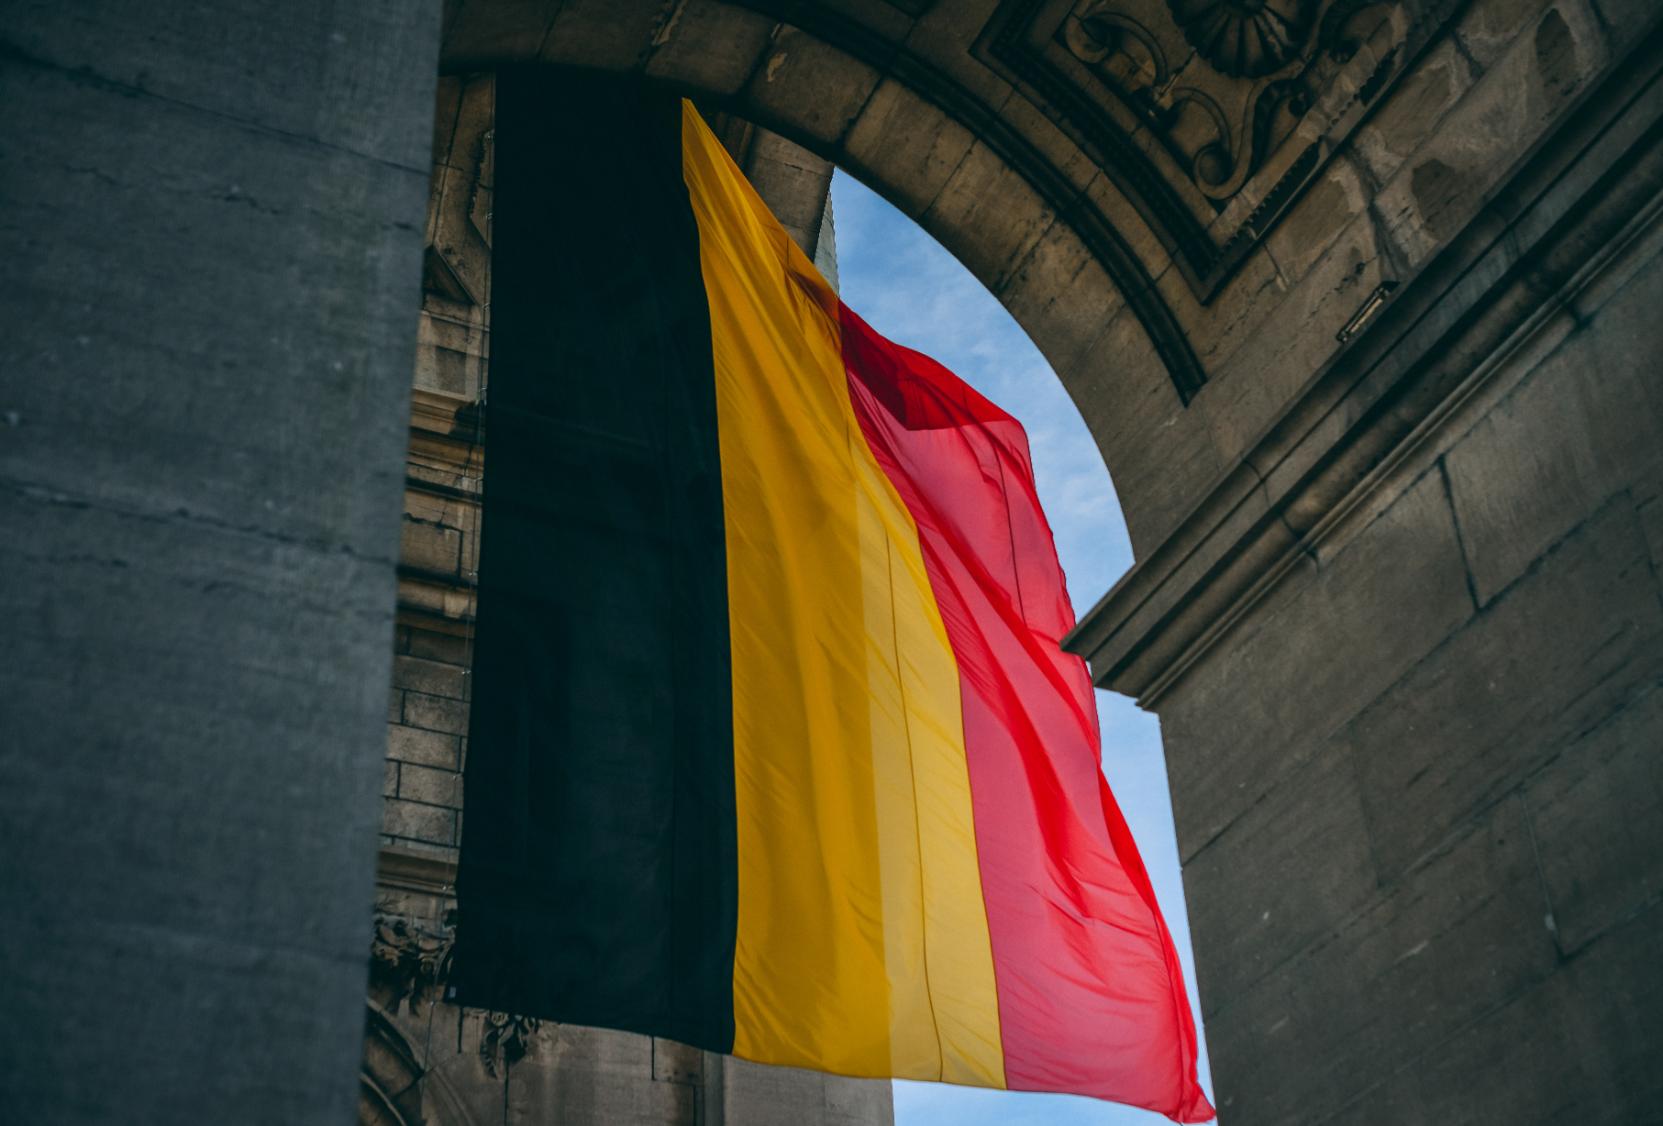 Belgium Flag under an arch.